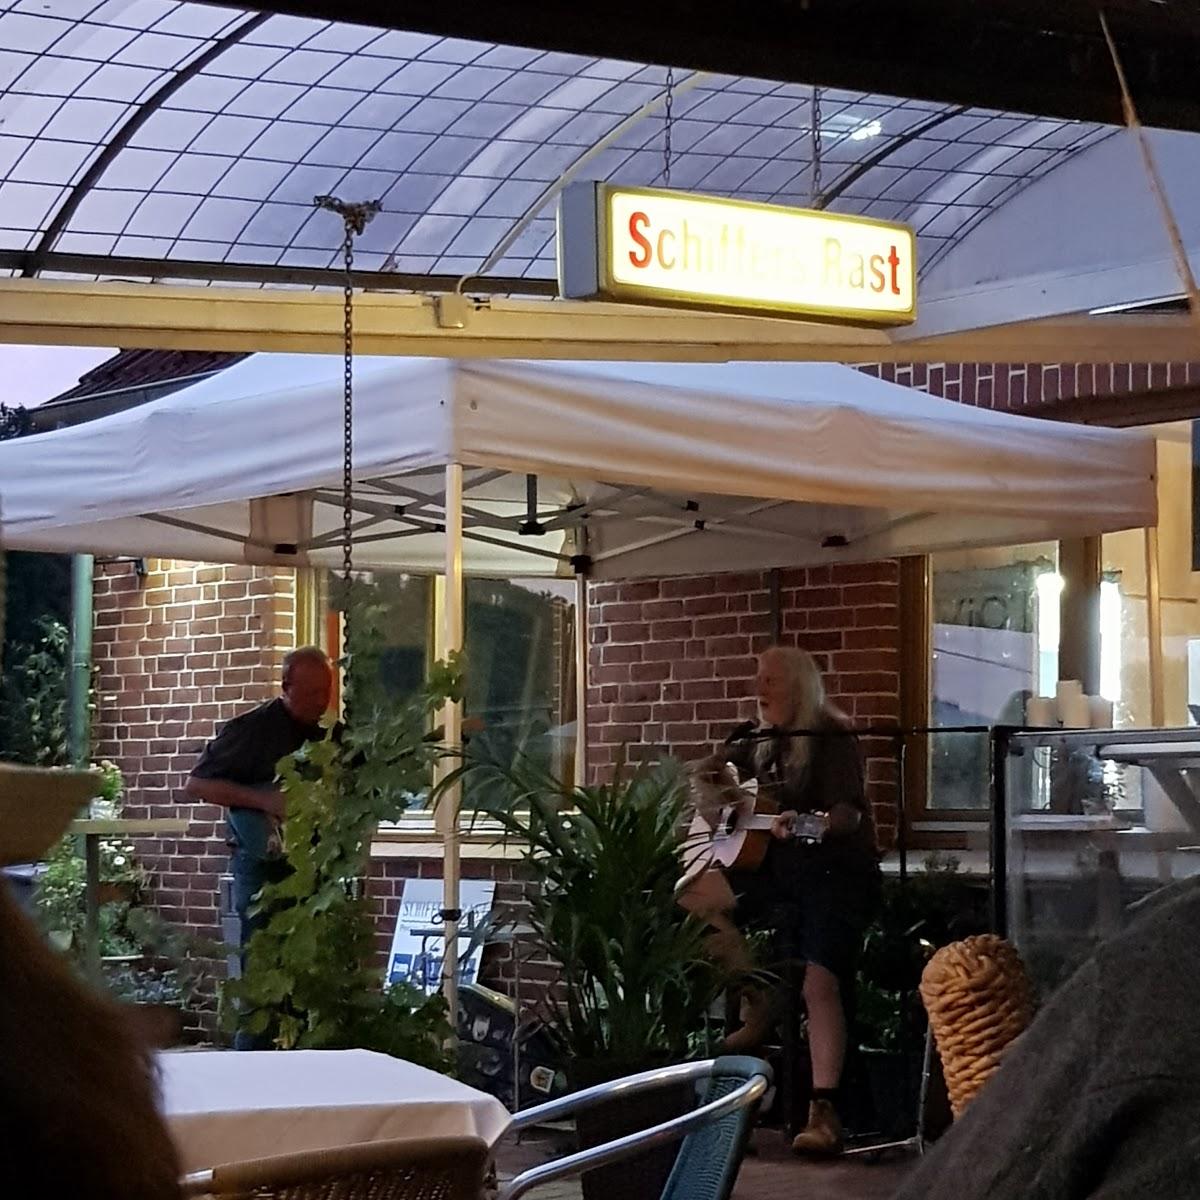 Restaurant "Schiffers Rast" in Witzeeze